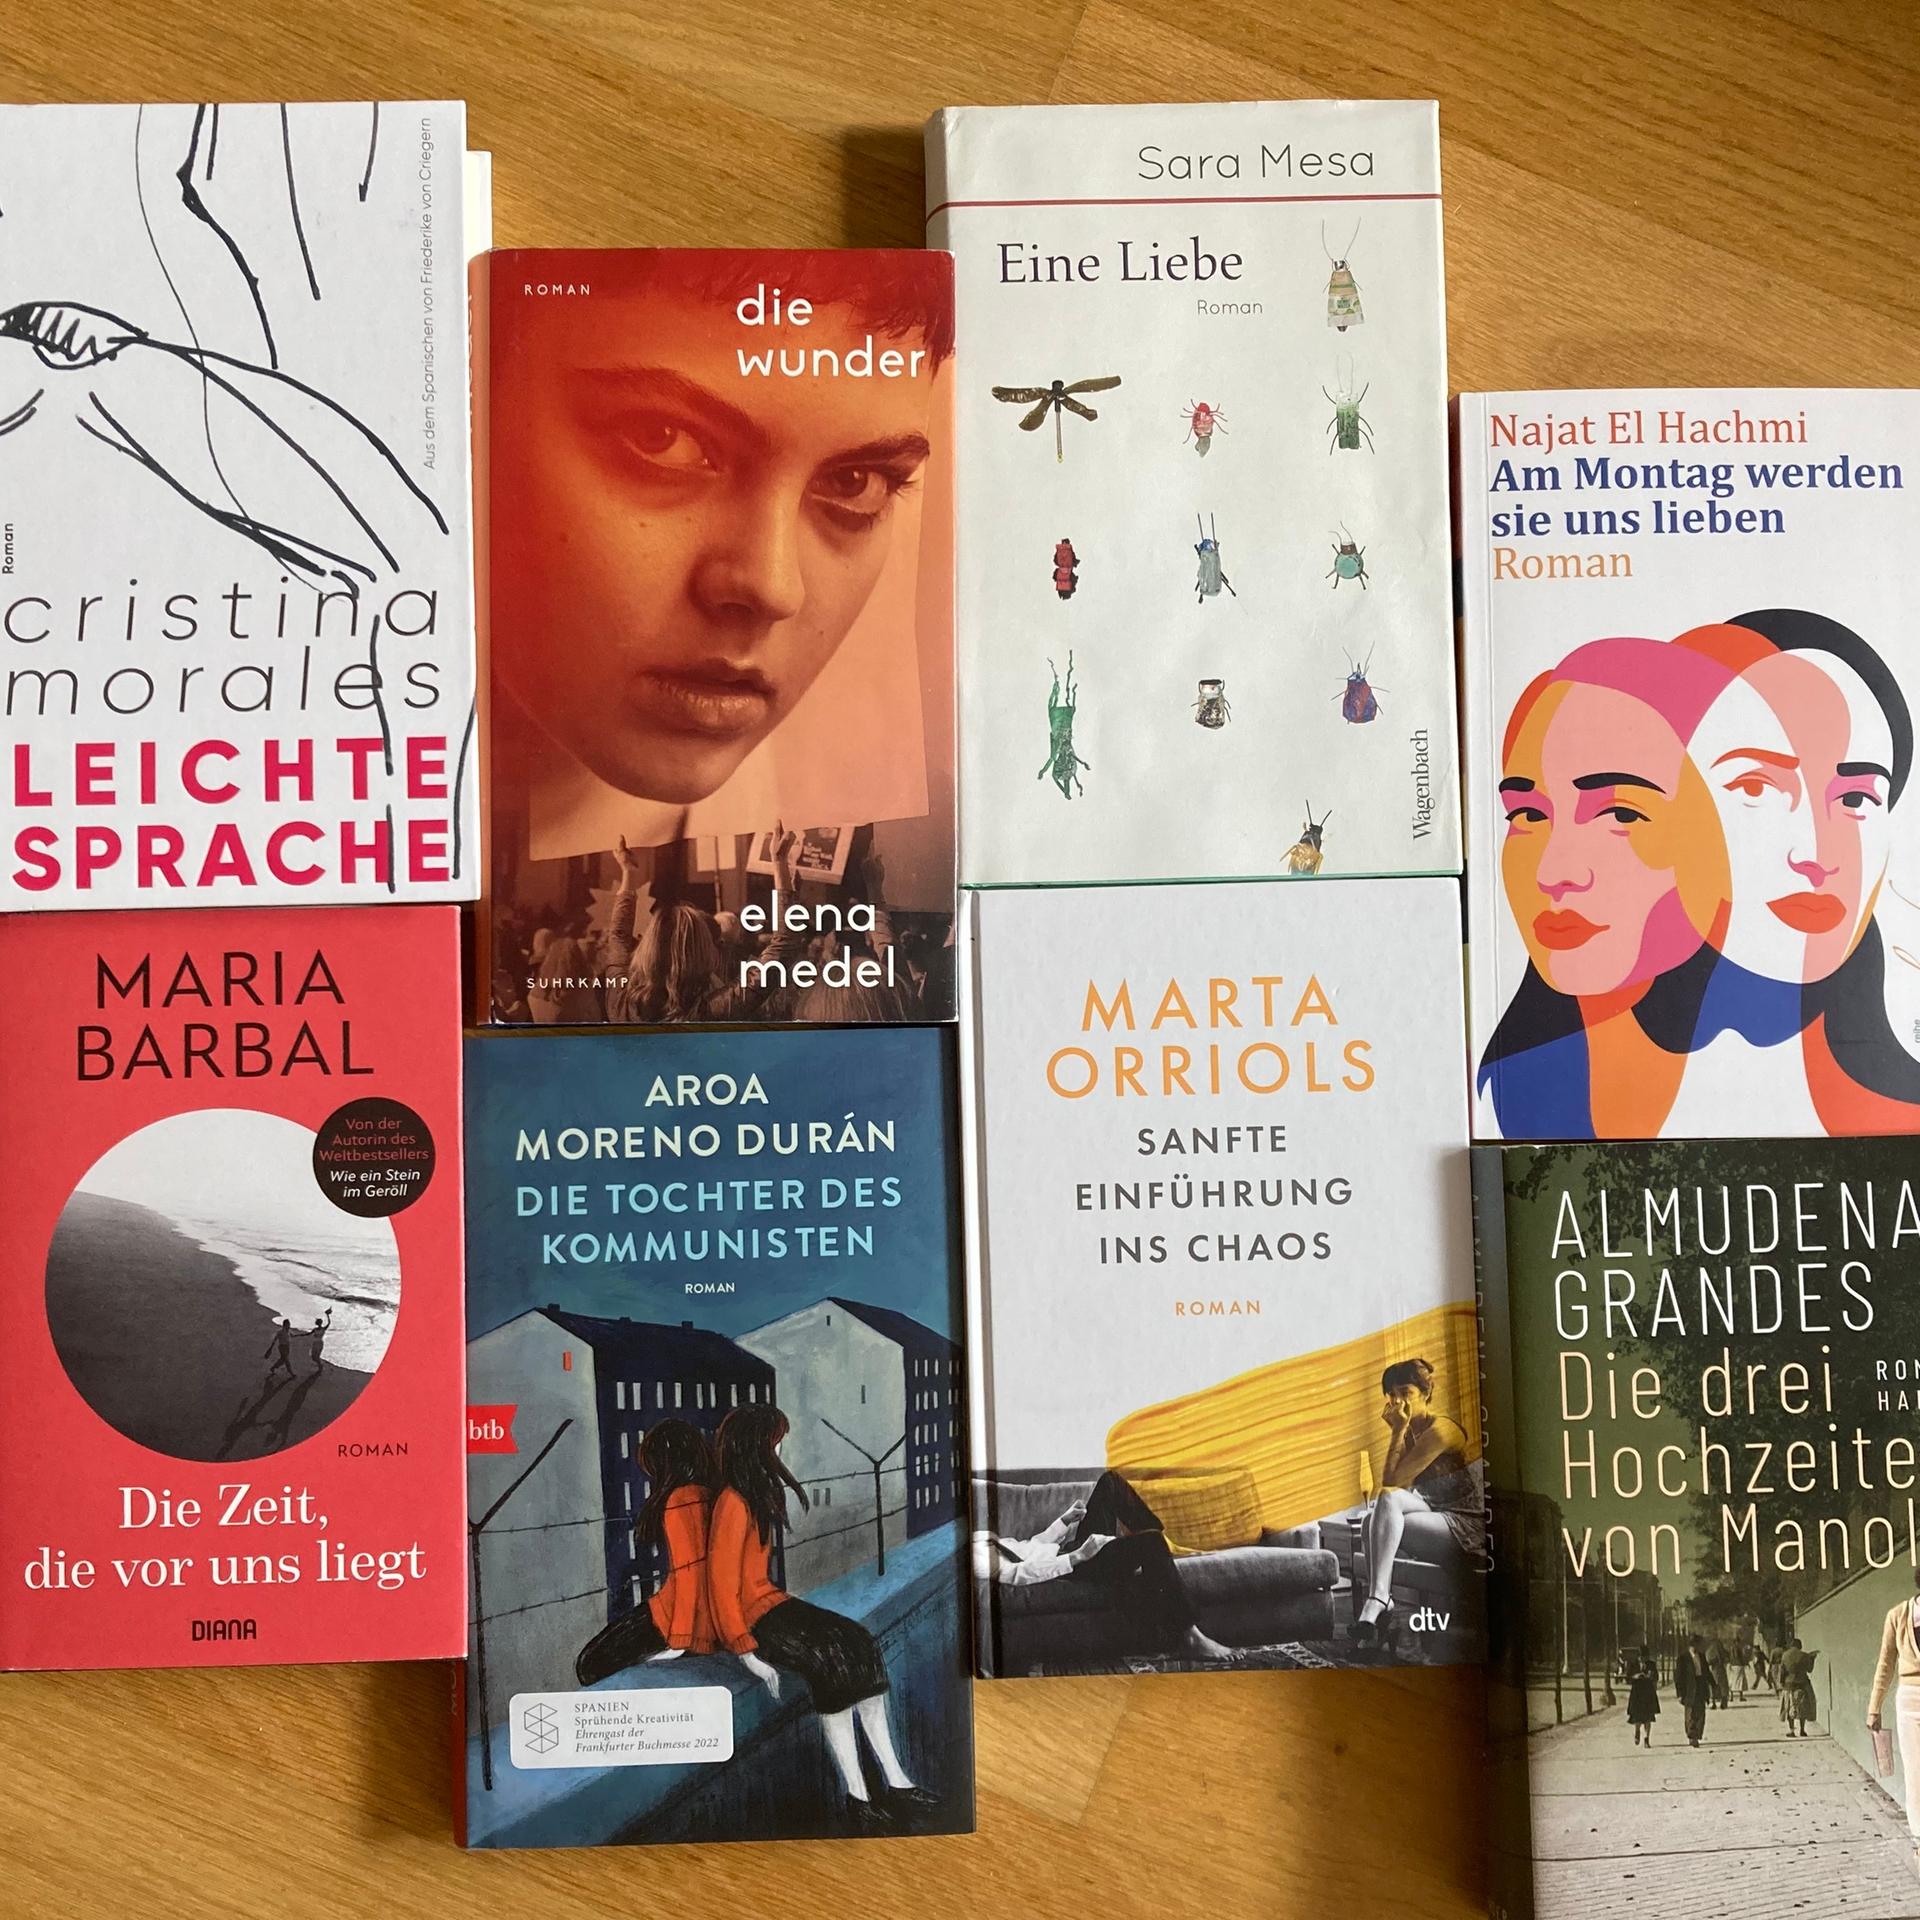 Lange Nacht der spanischen Literatur – Verrückt nach einer besseren Welt